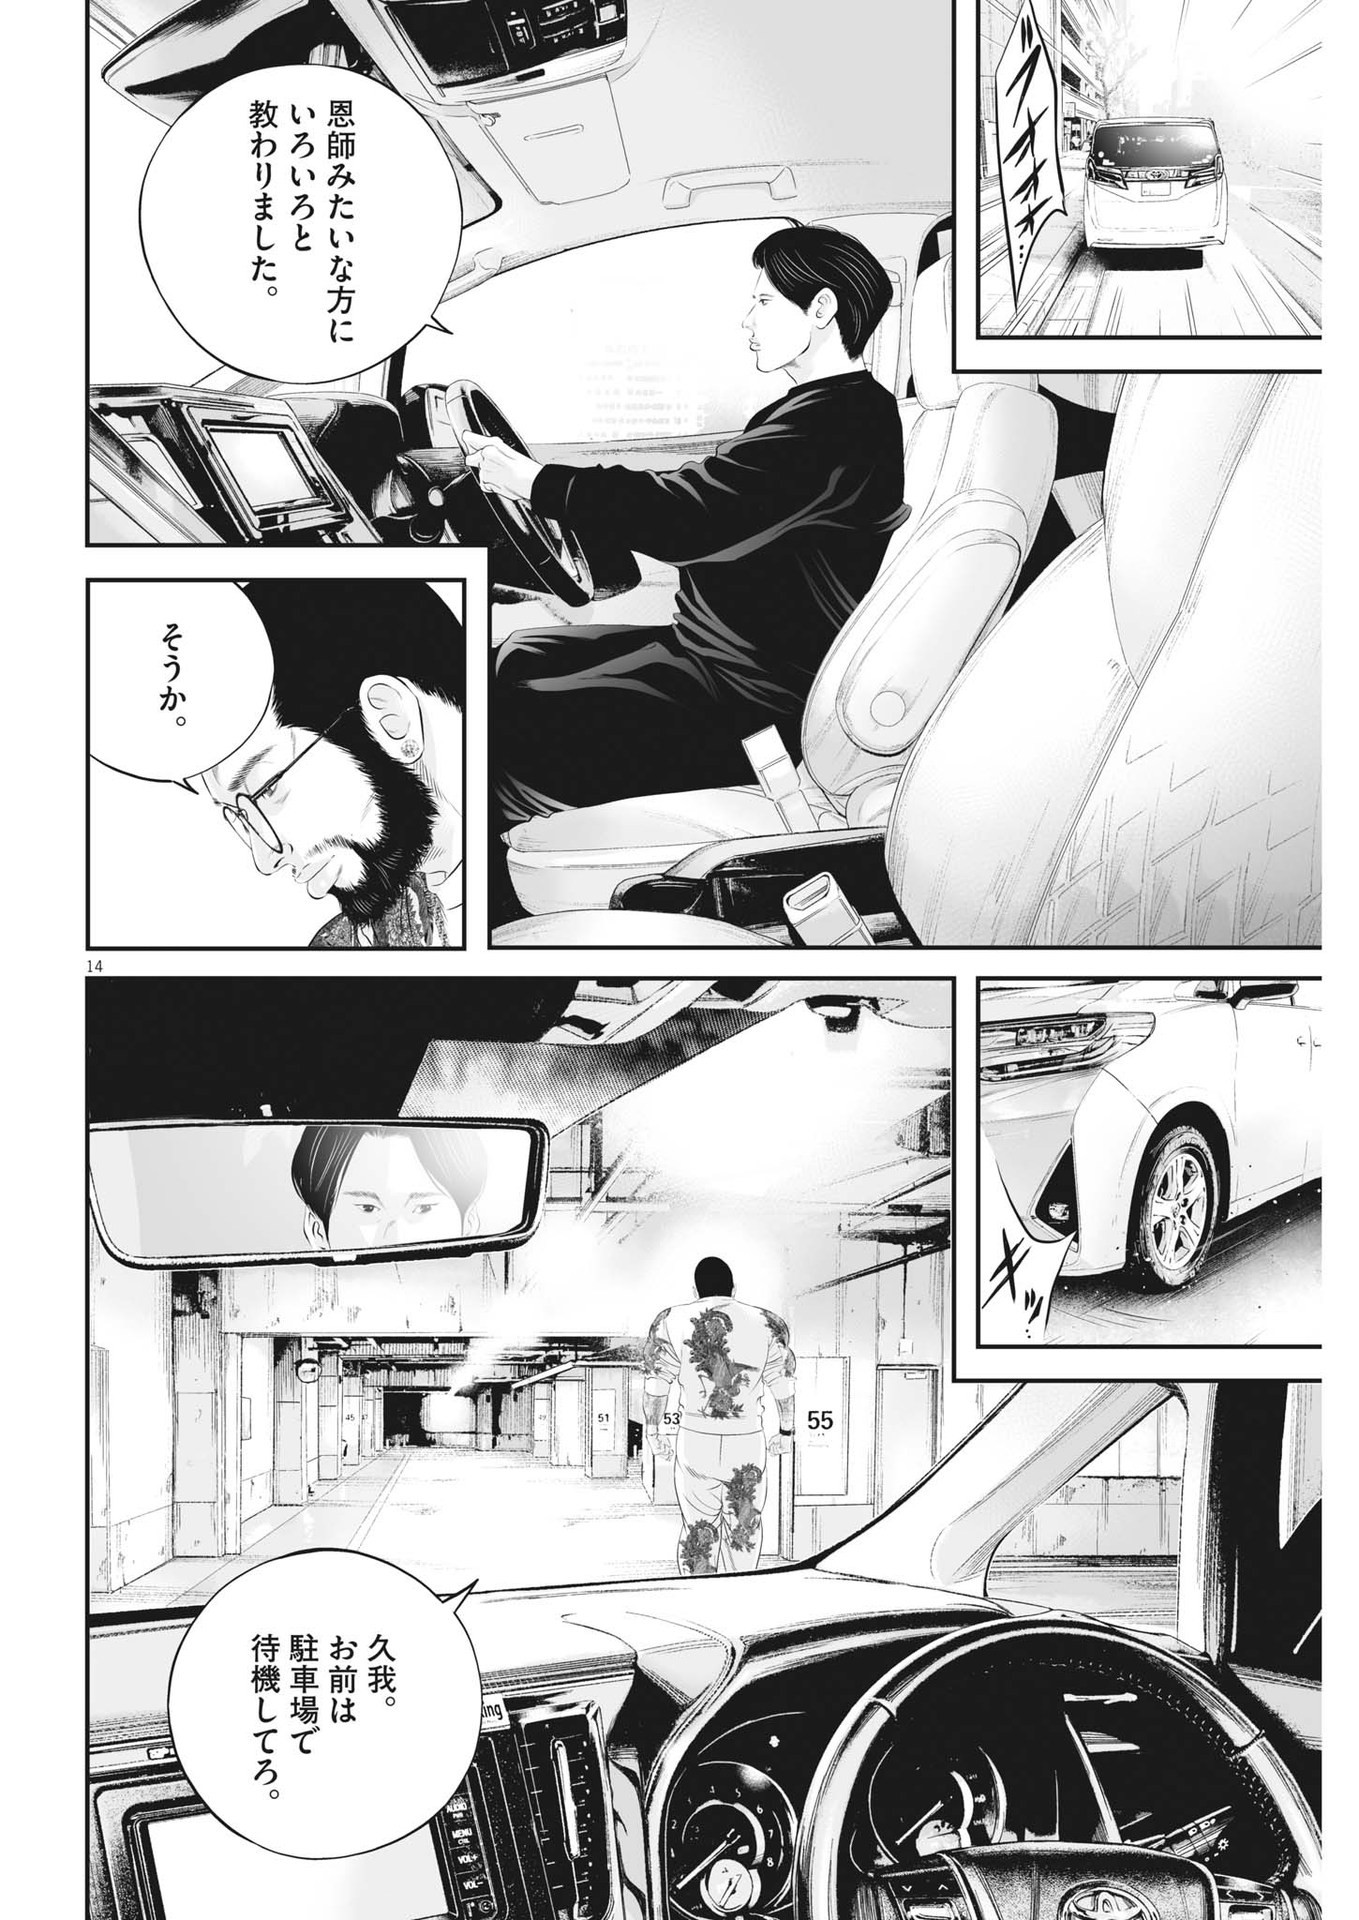 Kujou no Taizai - Chapter 95 - Page 14